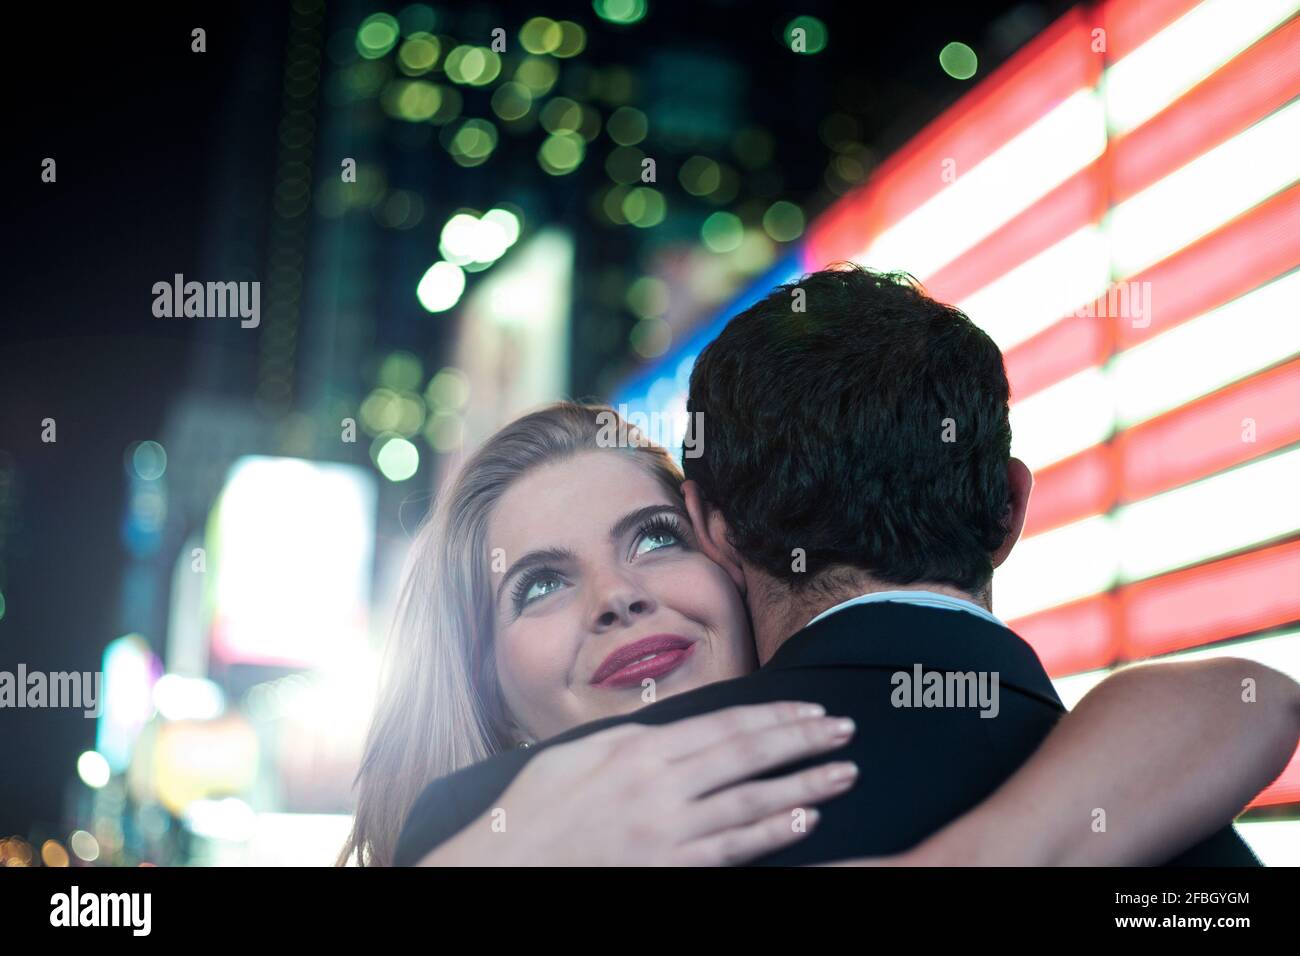 Bella donna che abbraccia il ragazzo con luci illuminate in città Foto Stock